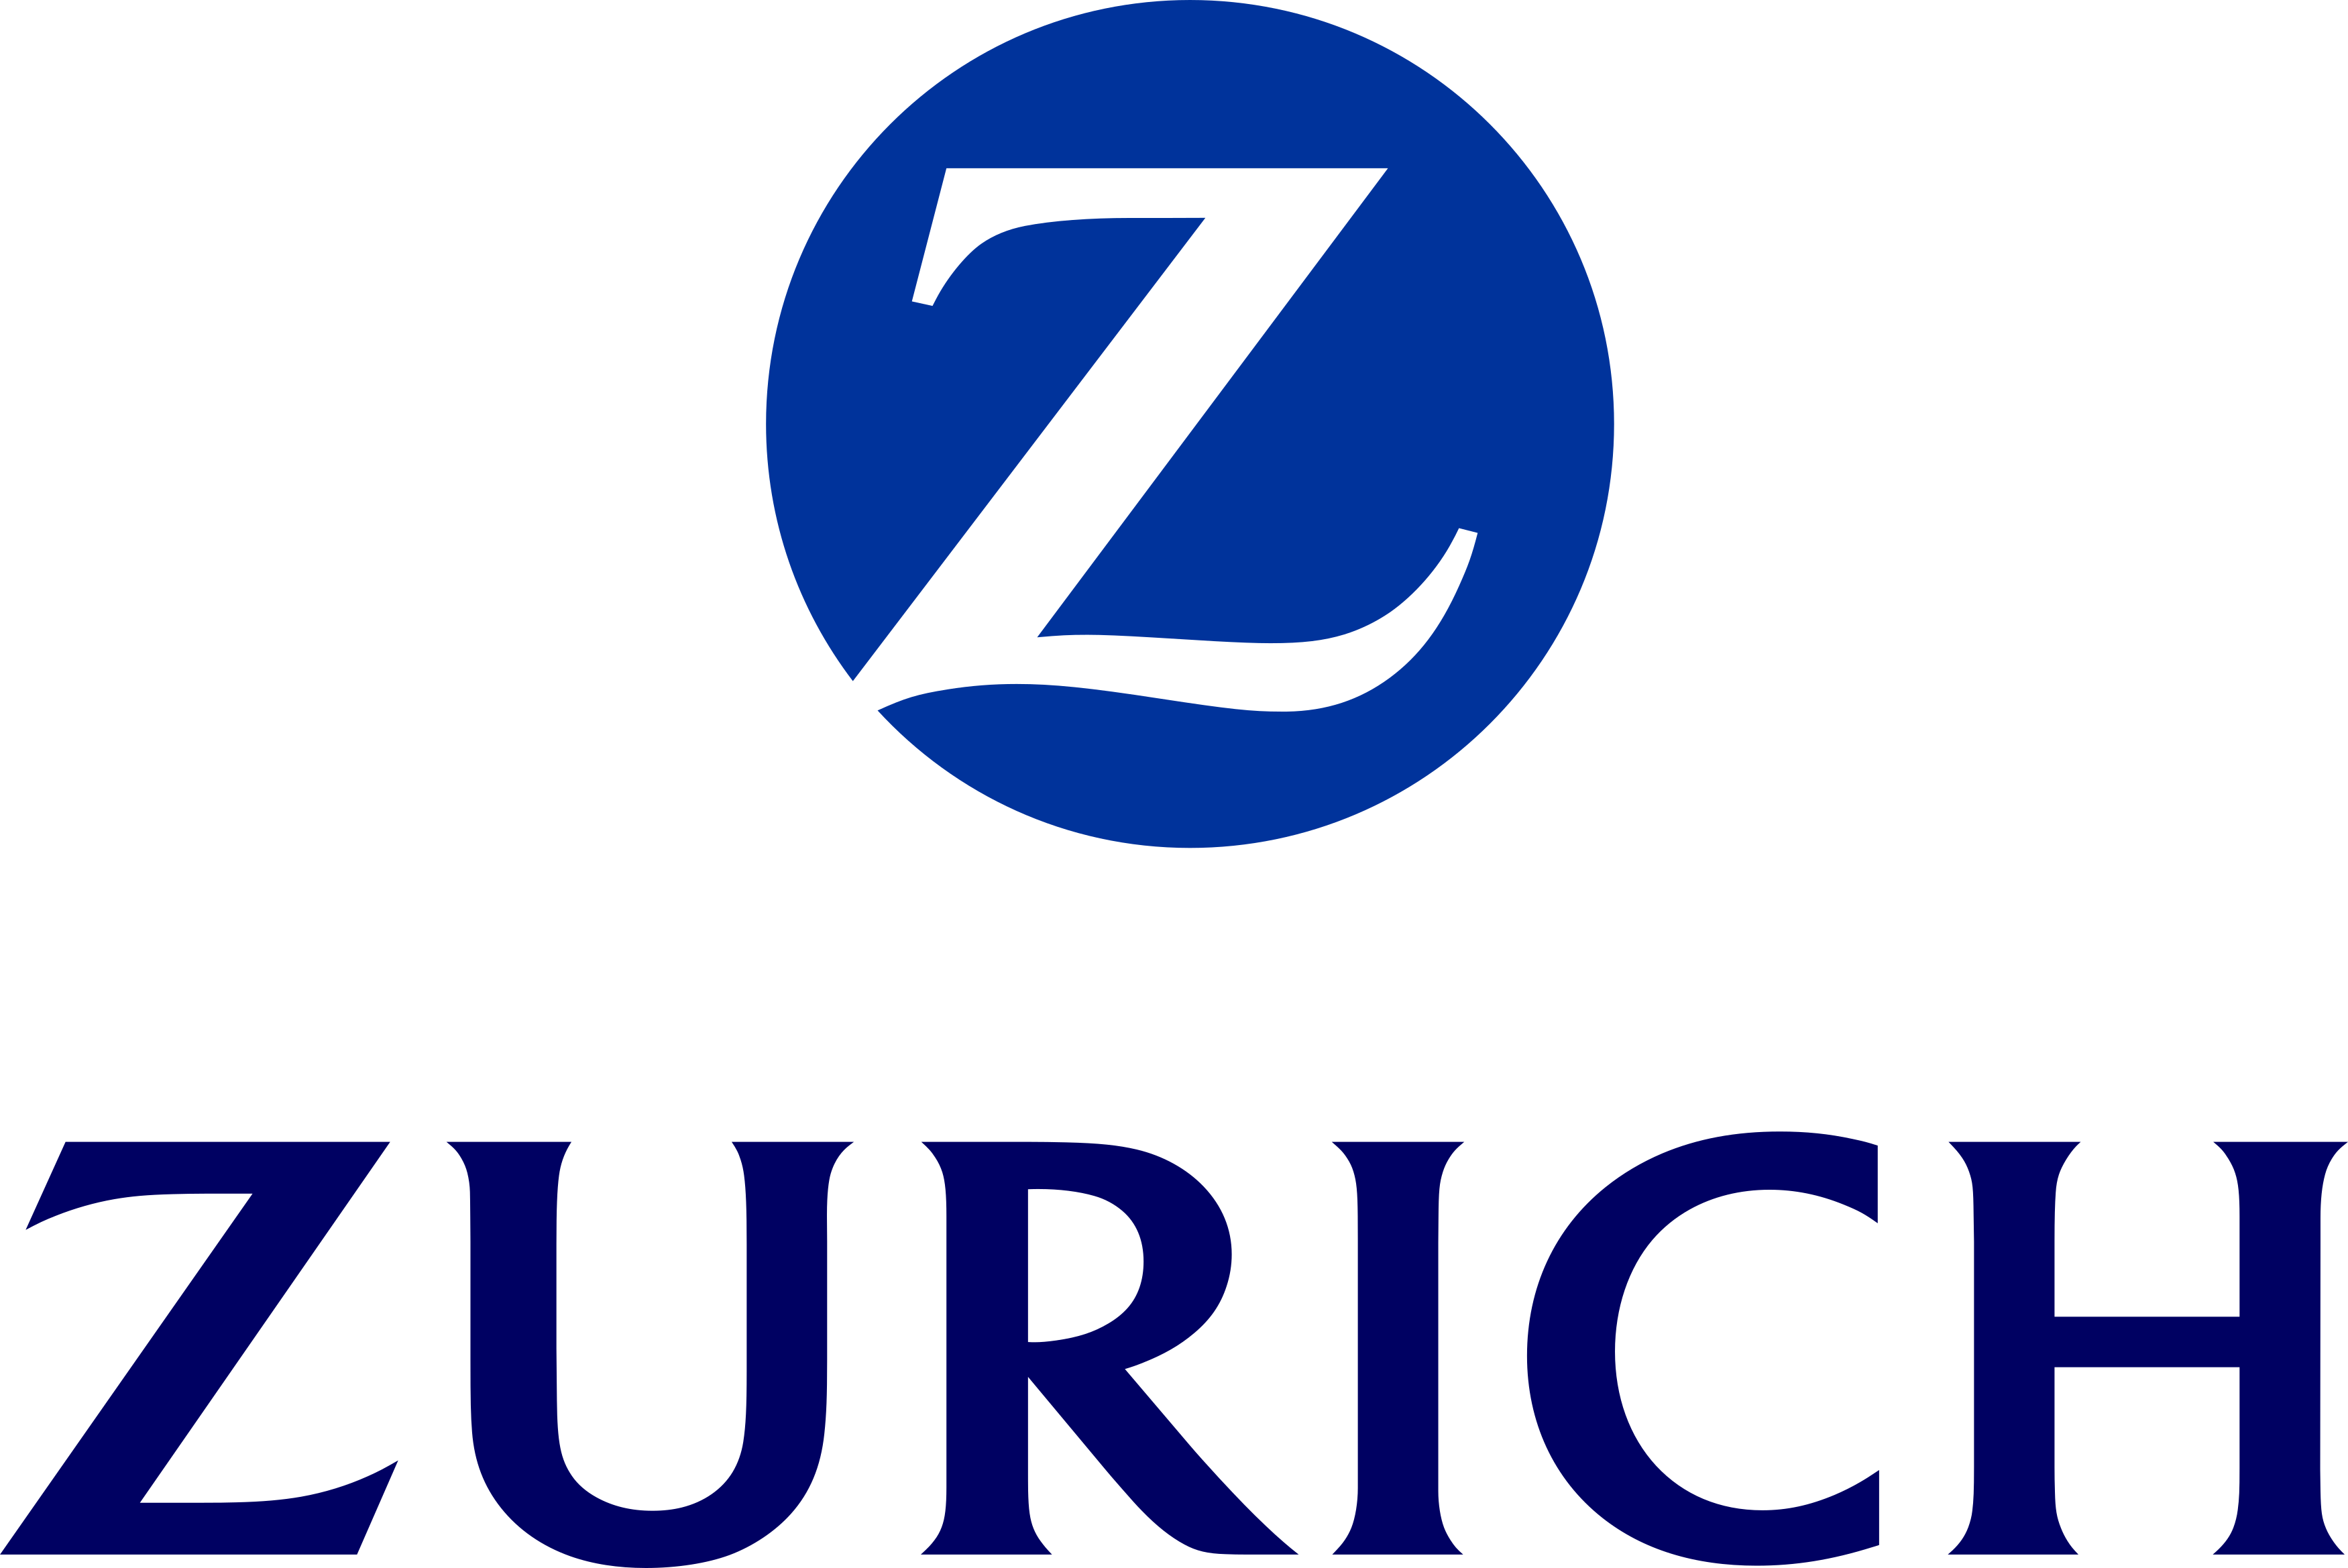 Zurich logo.